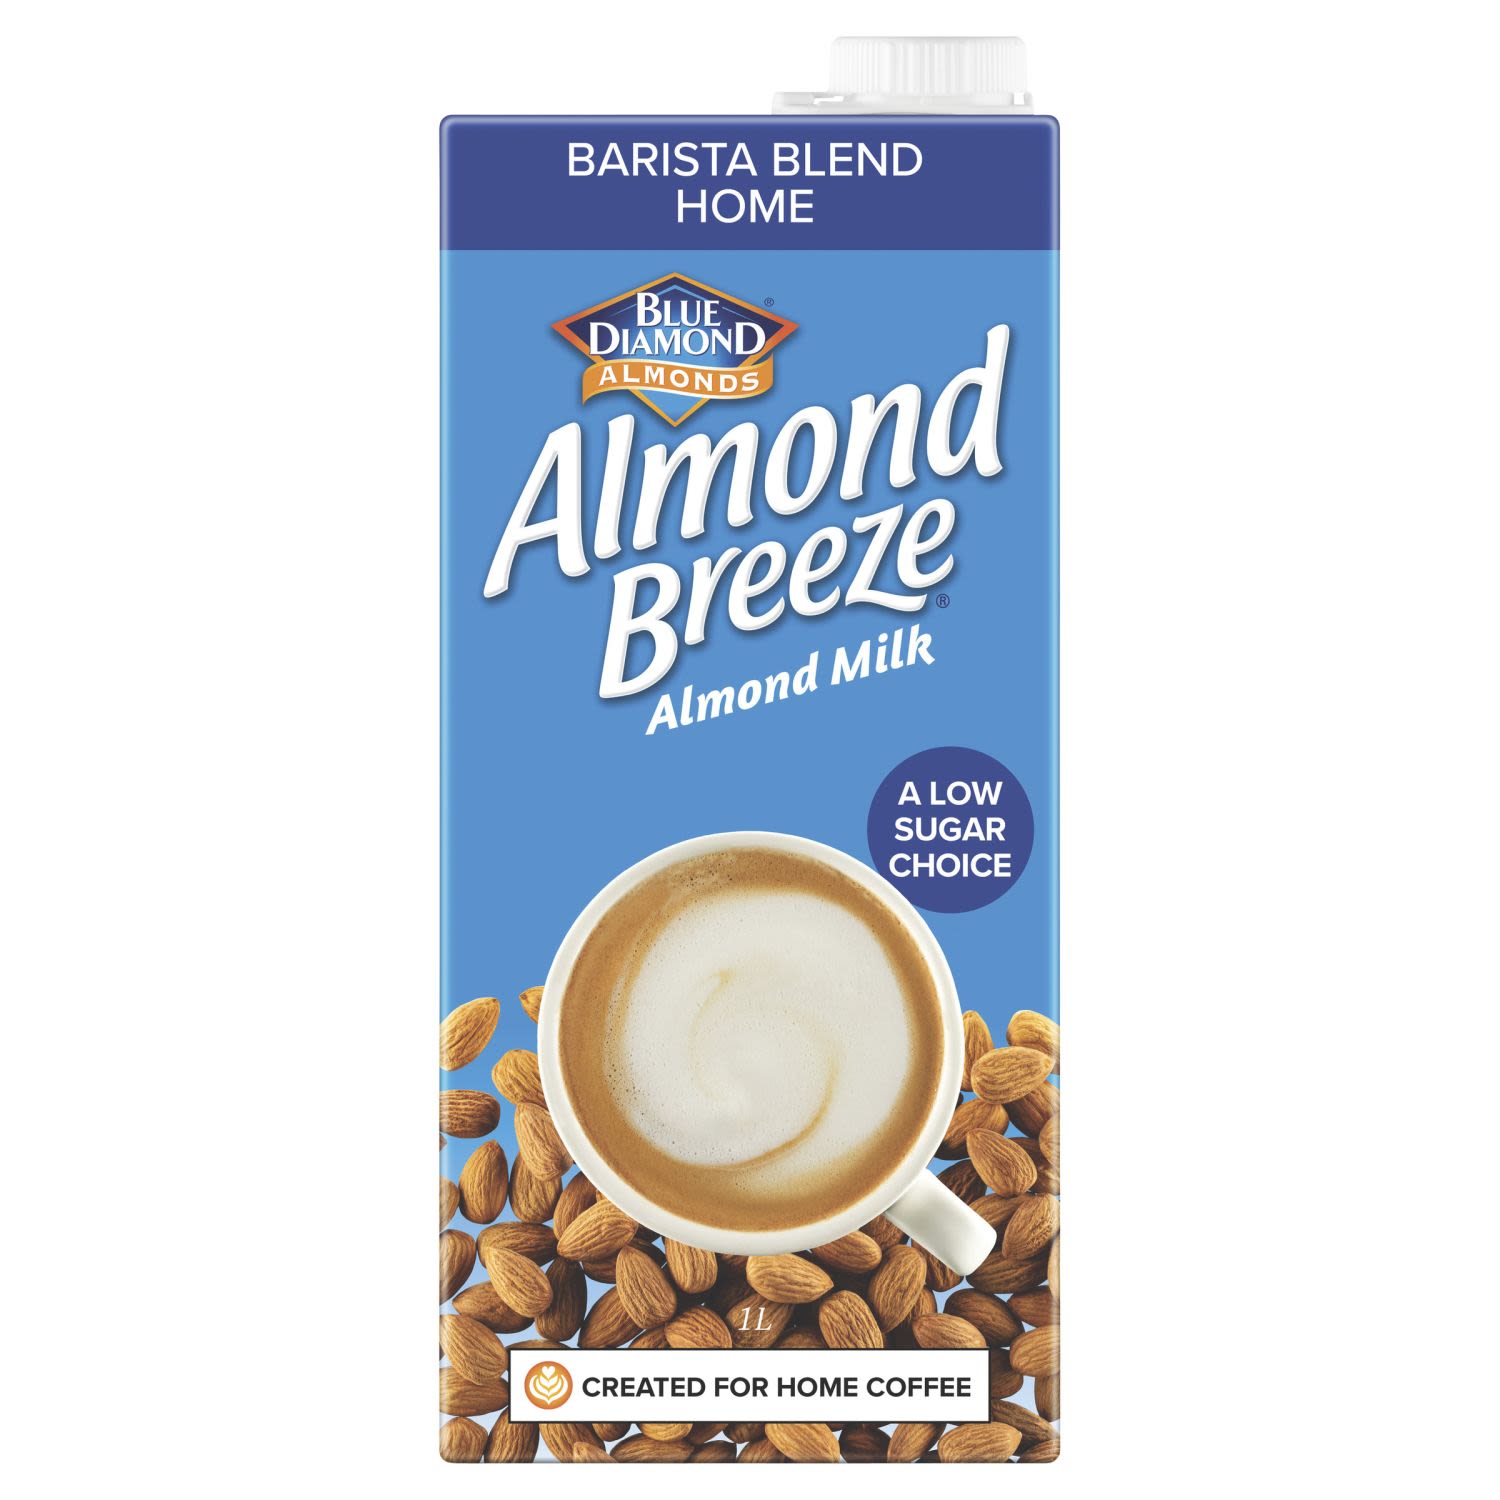 Almond Breeze Almond Milk Barista Blend Home, 1 Litre